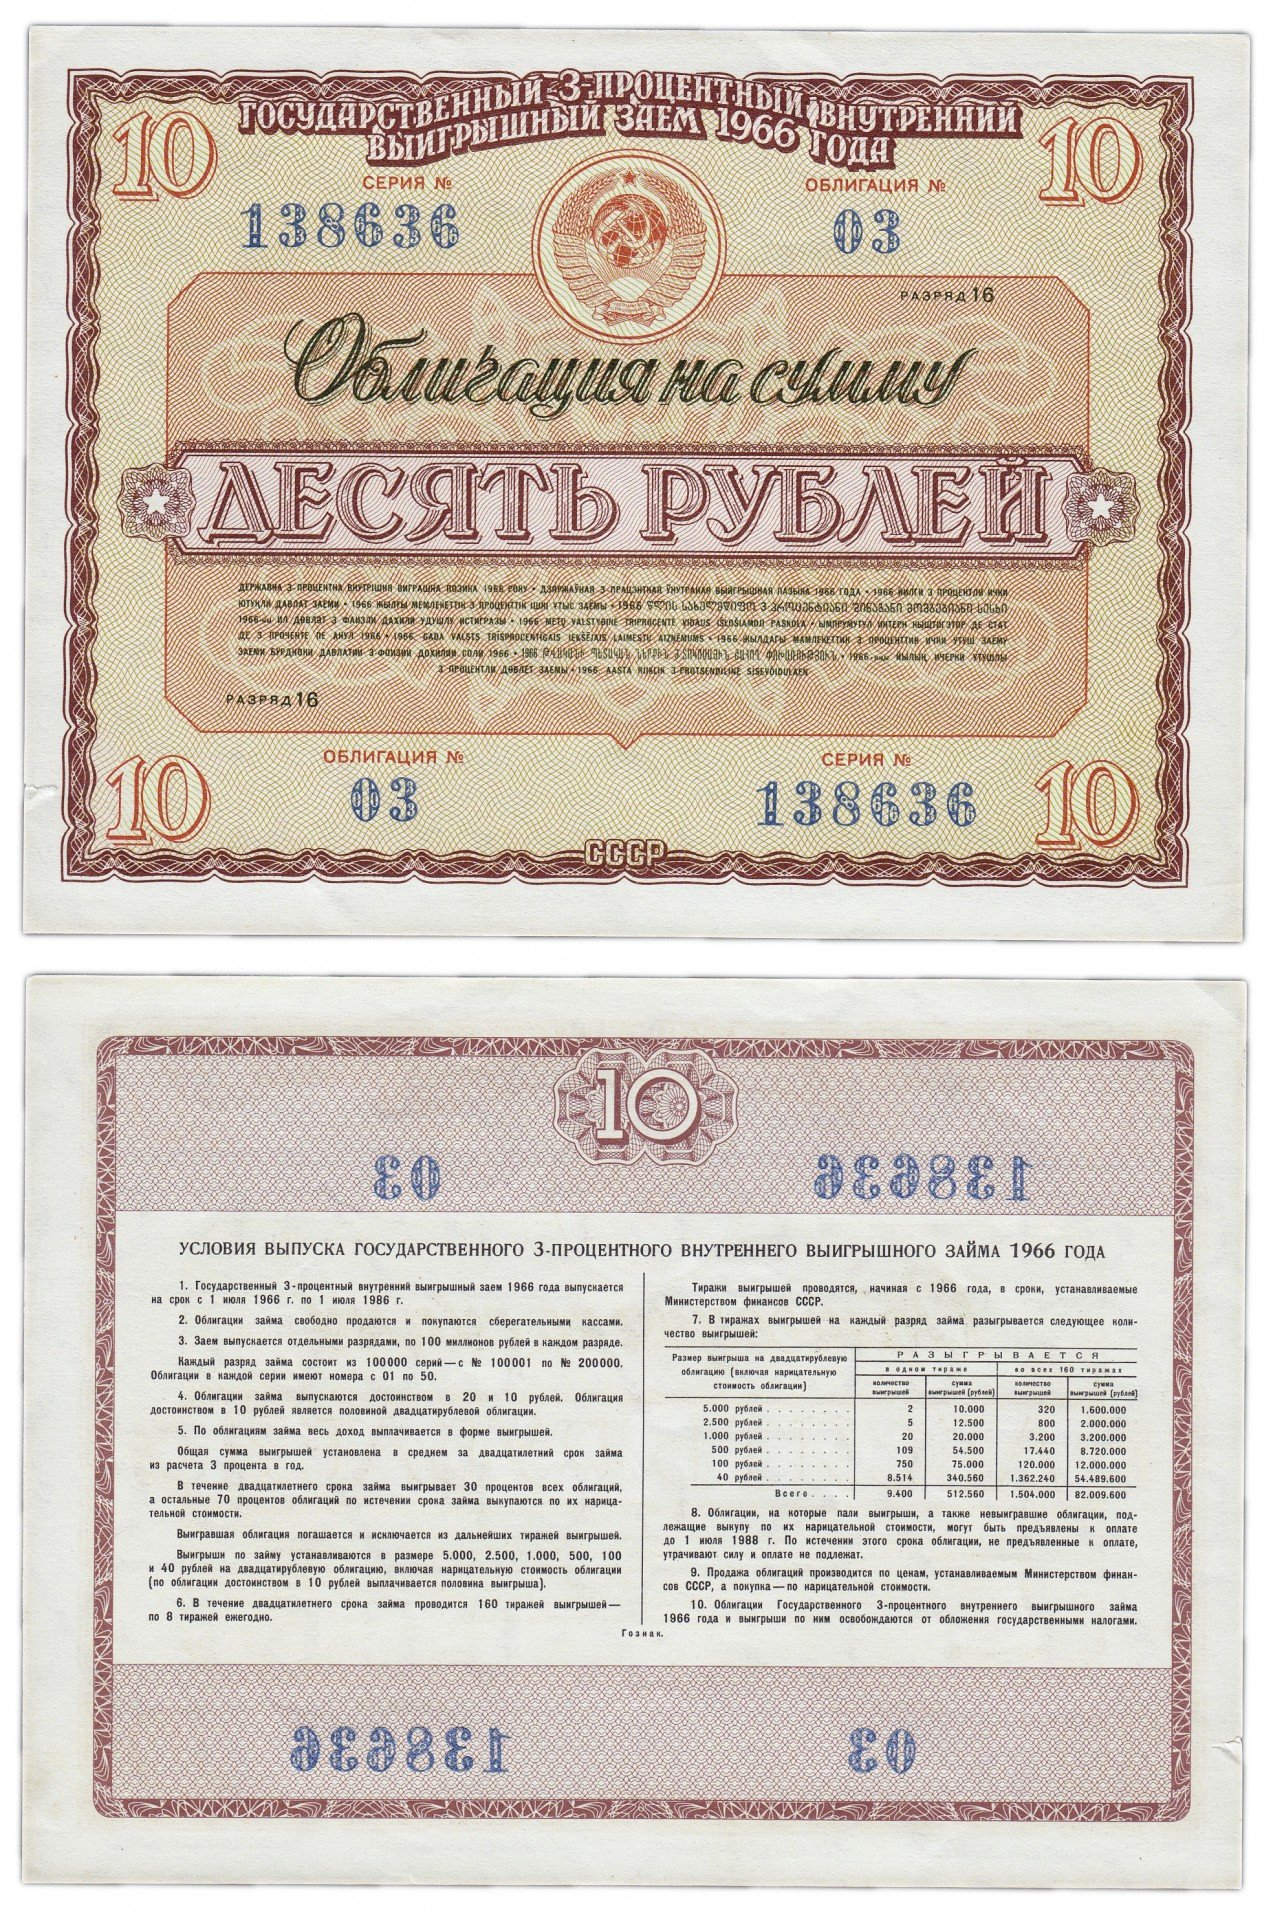 600 рублей 3 процента. Облигации 1966. Облигации государственного займа. Облигации 1966 года. 10 Рублей облигация.